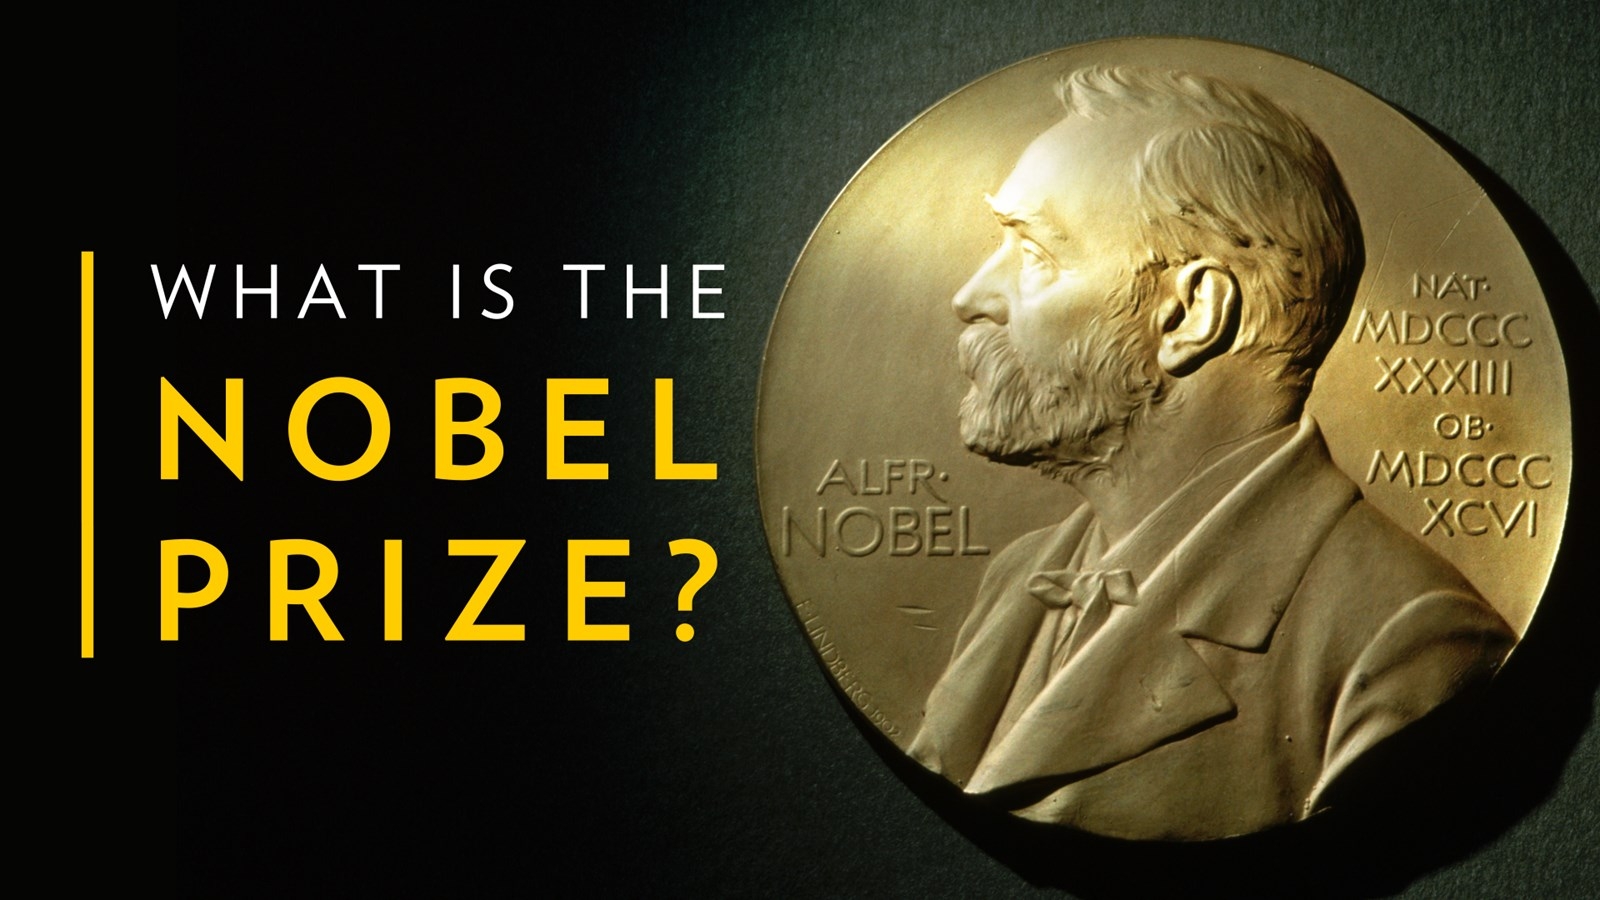 诺贝尔奖获得者的平均年龄是多少?属于我们的时间好像不多了